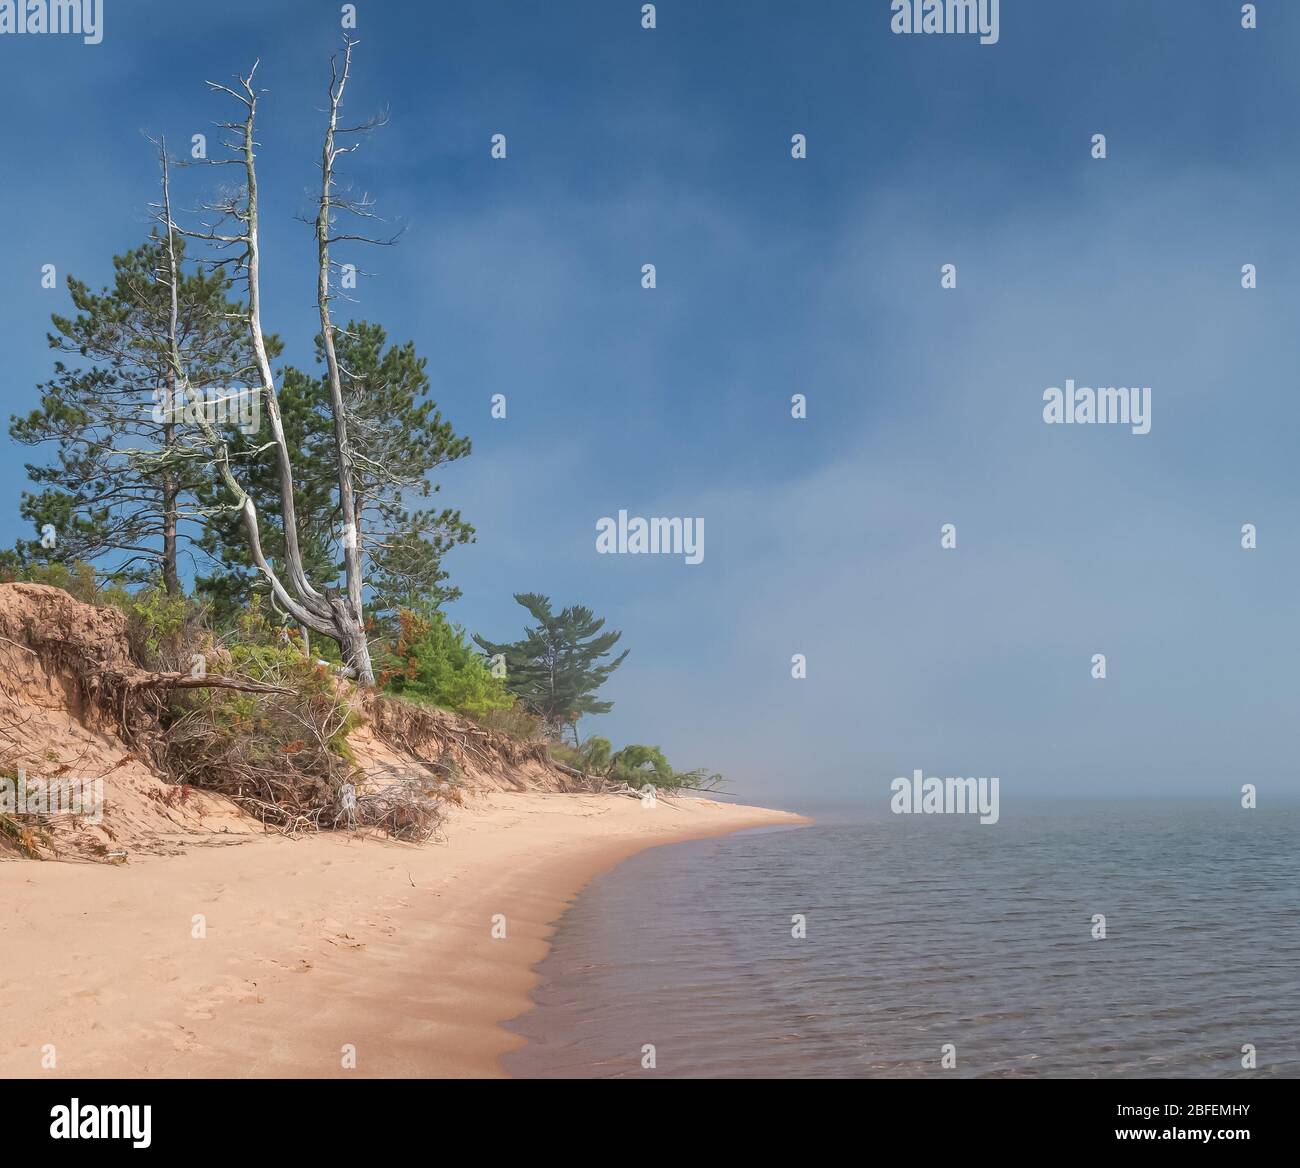 Une longue plage de sable avec des arbres au-dessus de lui se courbe vers l'horizon et disparaît dans l'eau sous un ciel bleu avec du brouillard. Banque D'Images